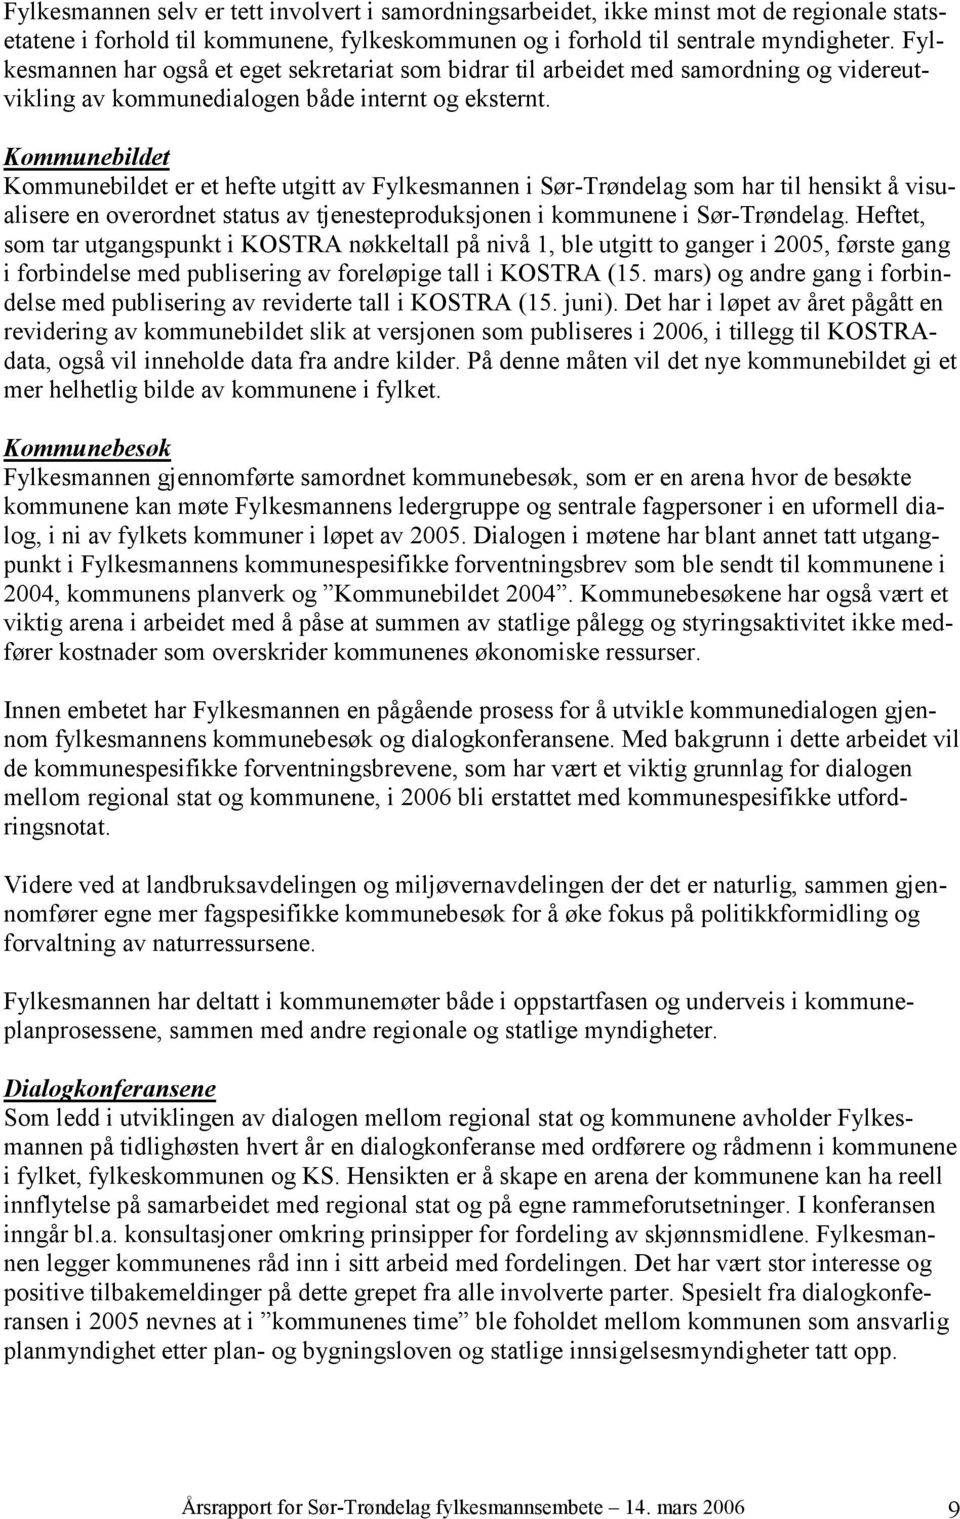 Kommunebildet Kommunebildet er et hefte utgitt av Fylkesmannen i Sør-Trøndelag som har til hensikt å visualisere en overordnet status av tjenesteproduksjonen i kommunene i Sør-Trøndelag.